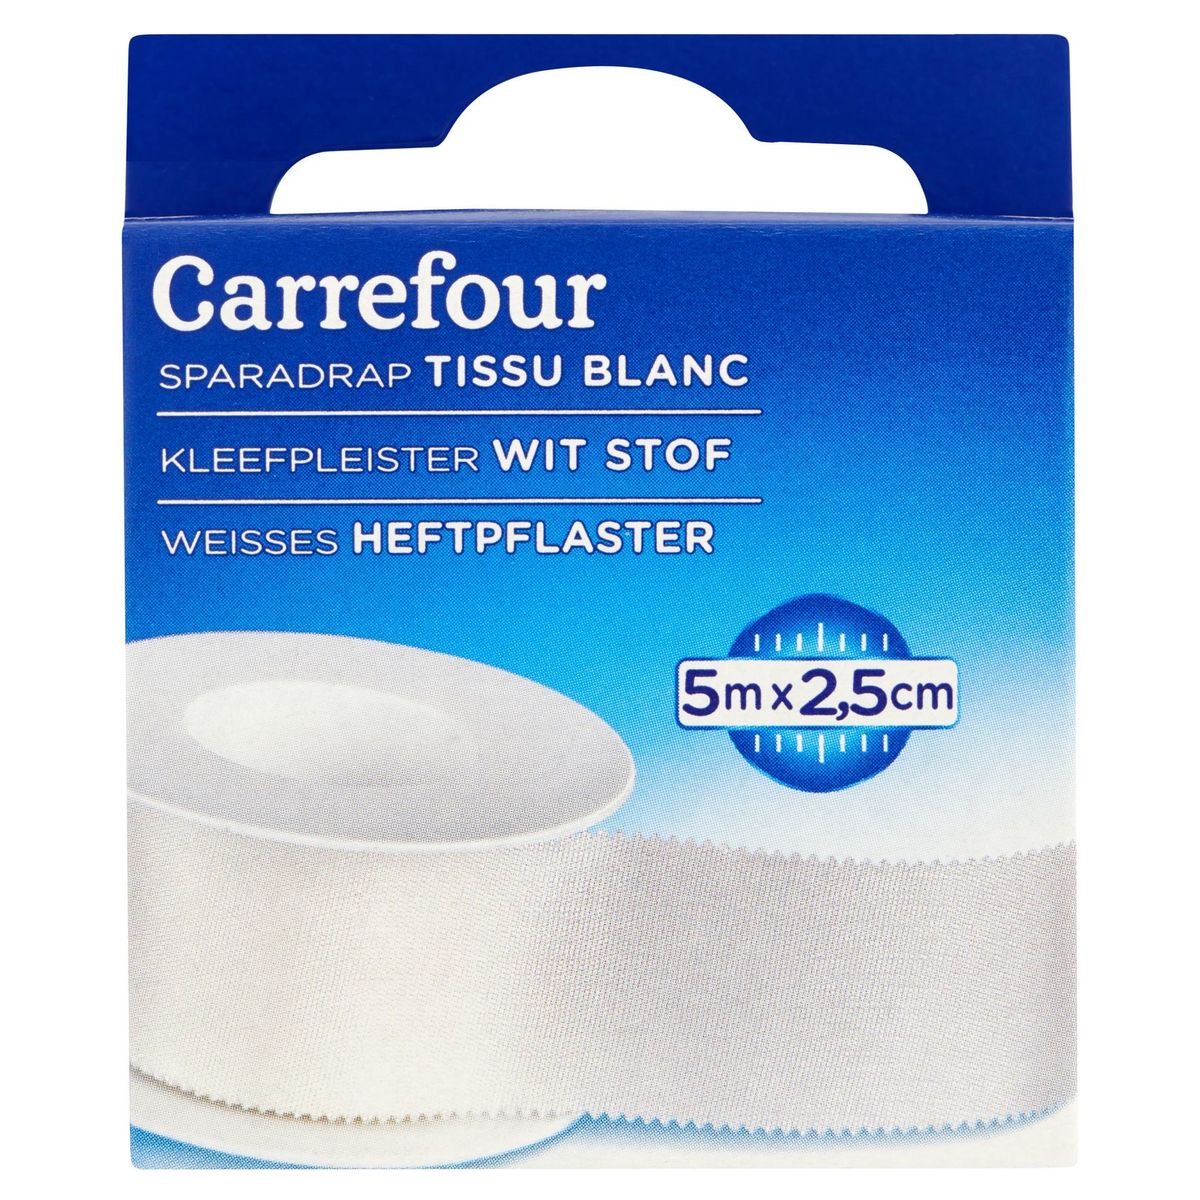 Carrefour Sparadrap Tissu Blanc 5 m x 2.5 cm